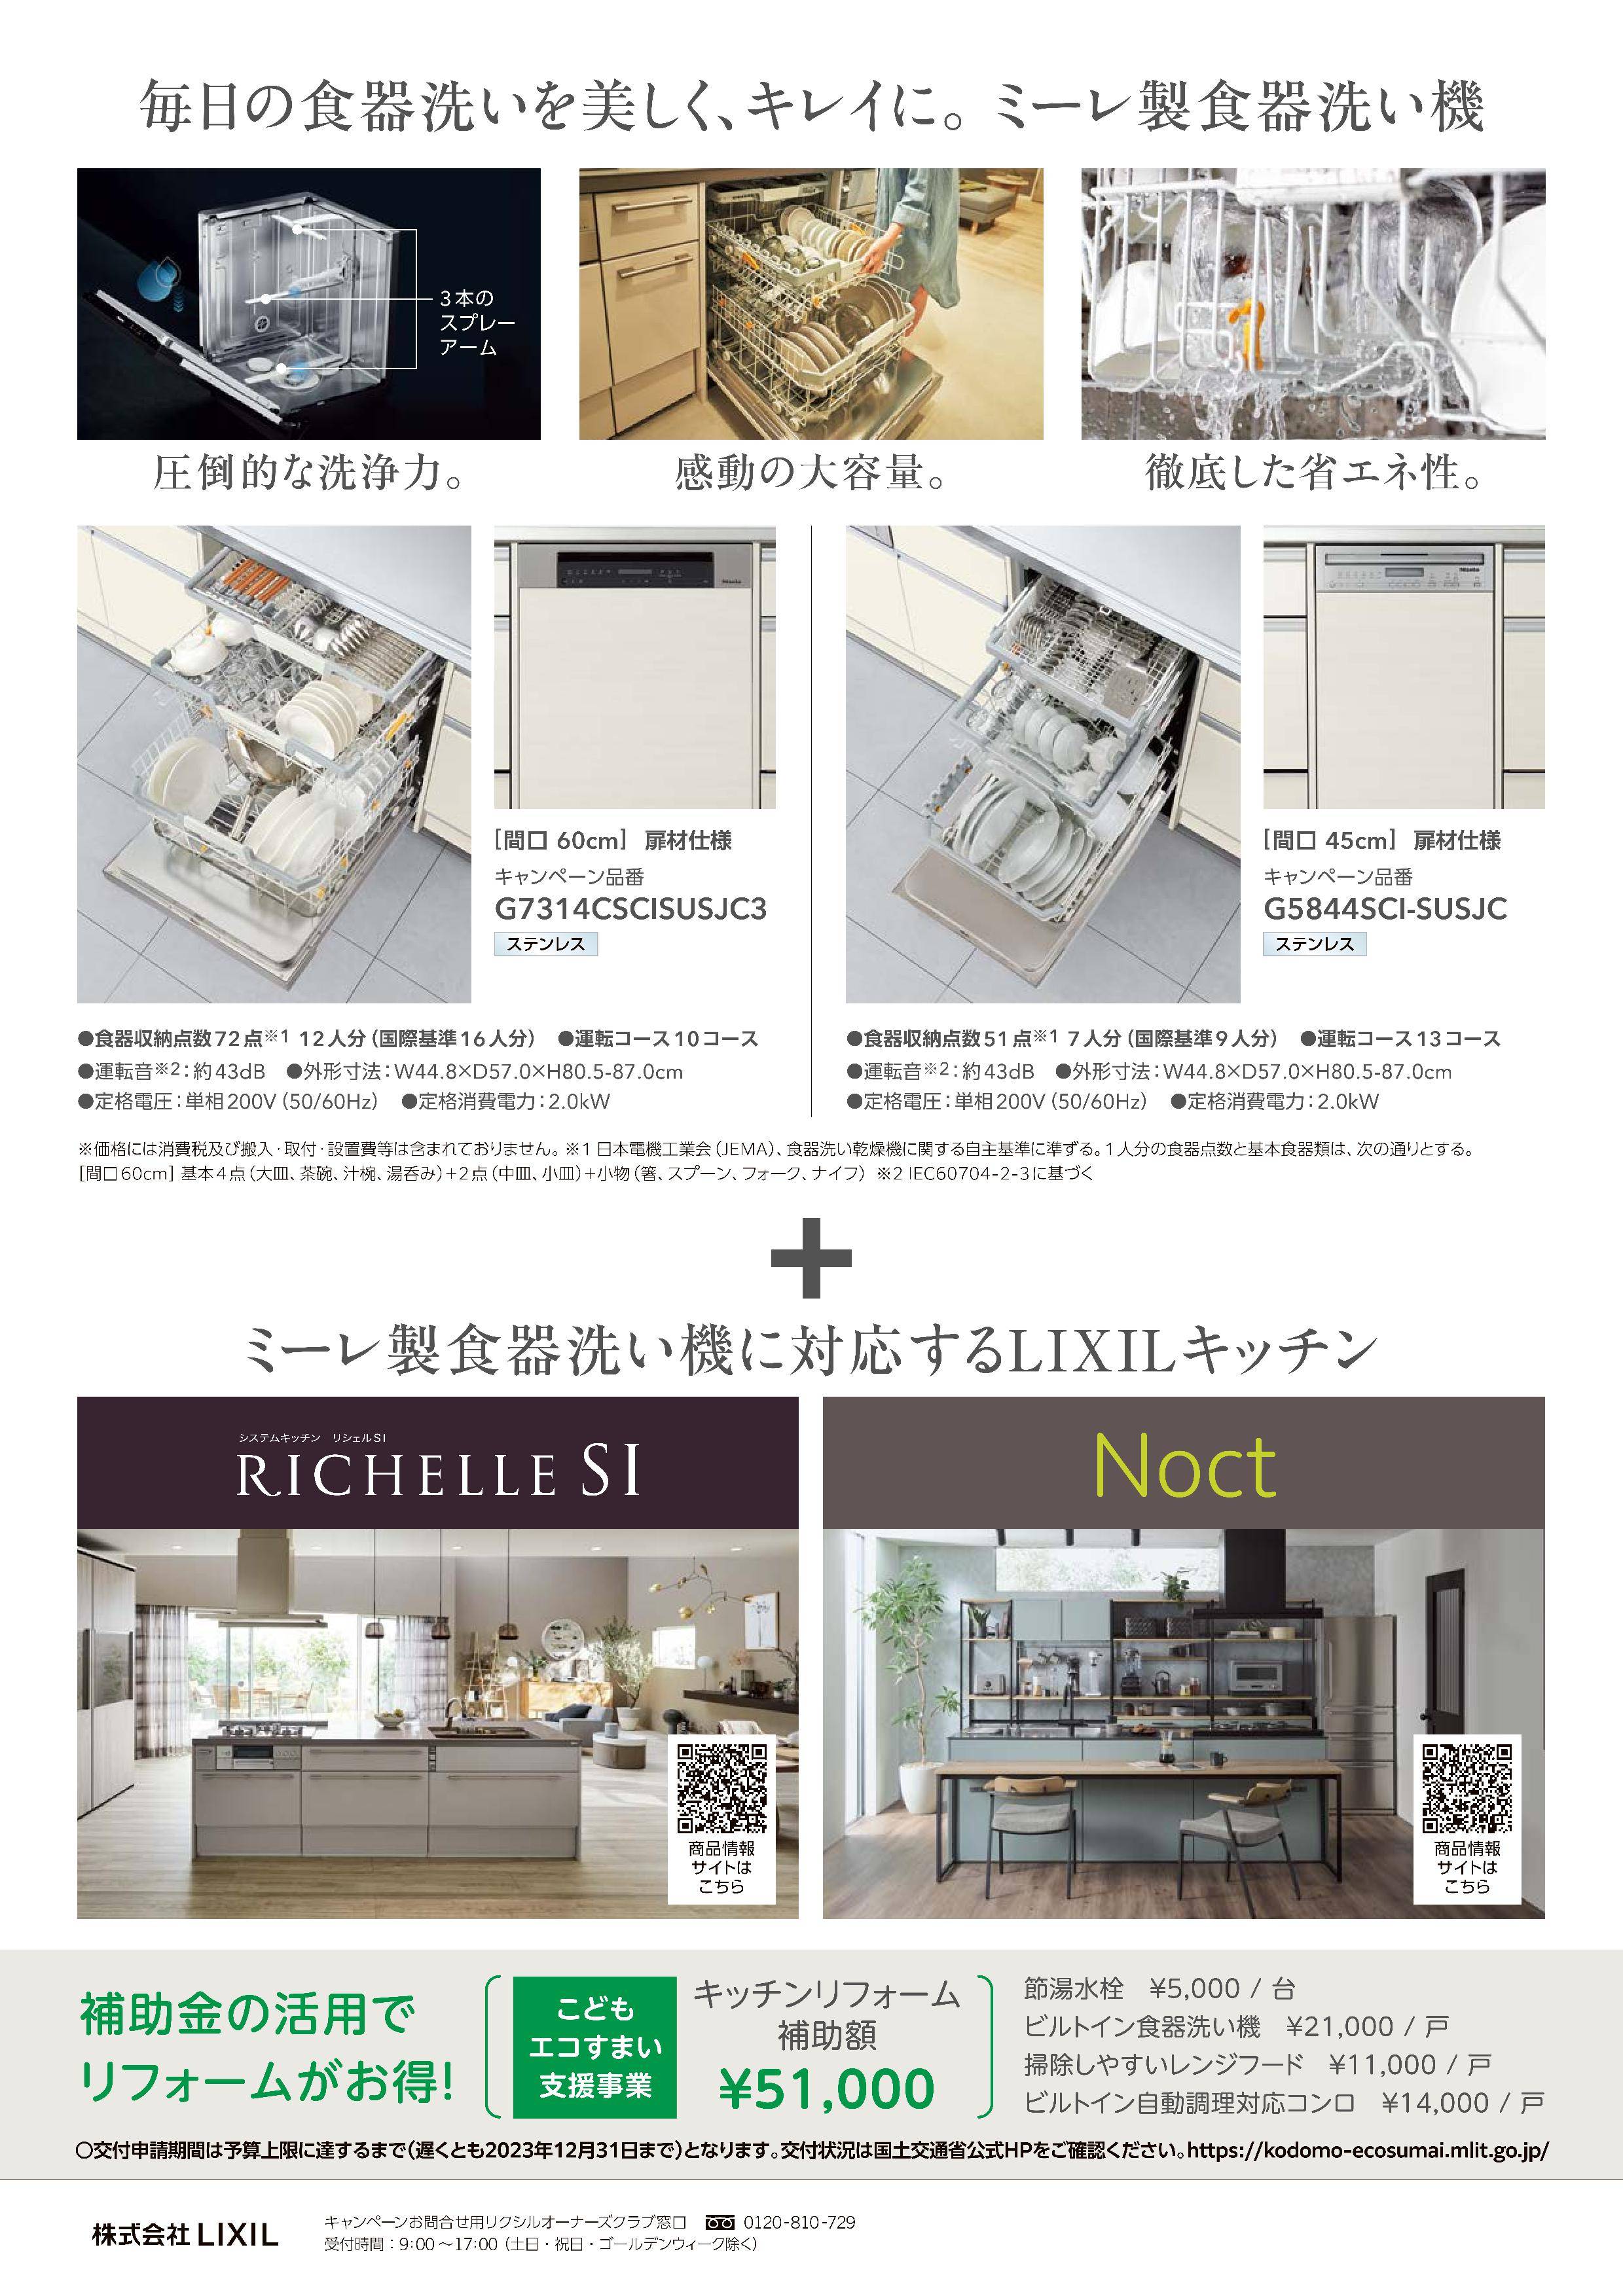 ミーレ製食器洗い機　キッチンセット割りキャンペーン 東福岡トーヨー住器のイベントキャンペーン 写真2